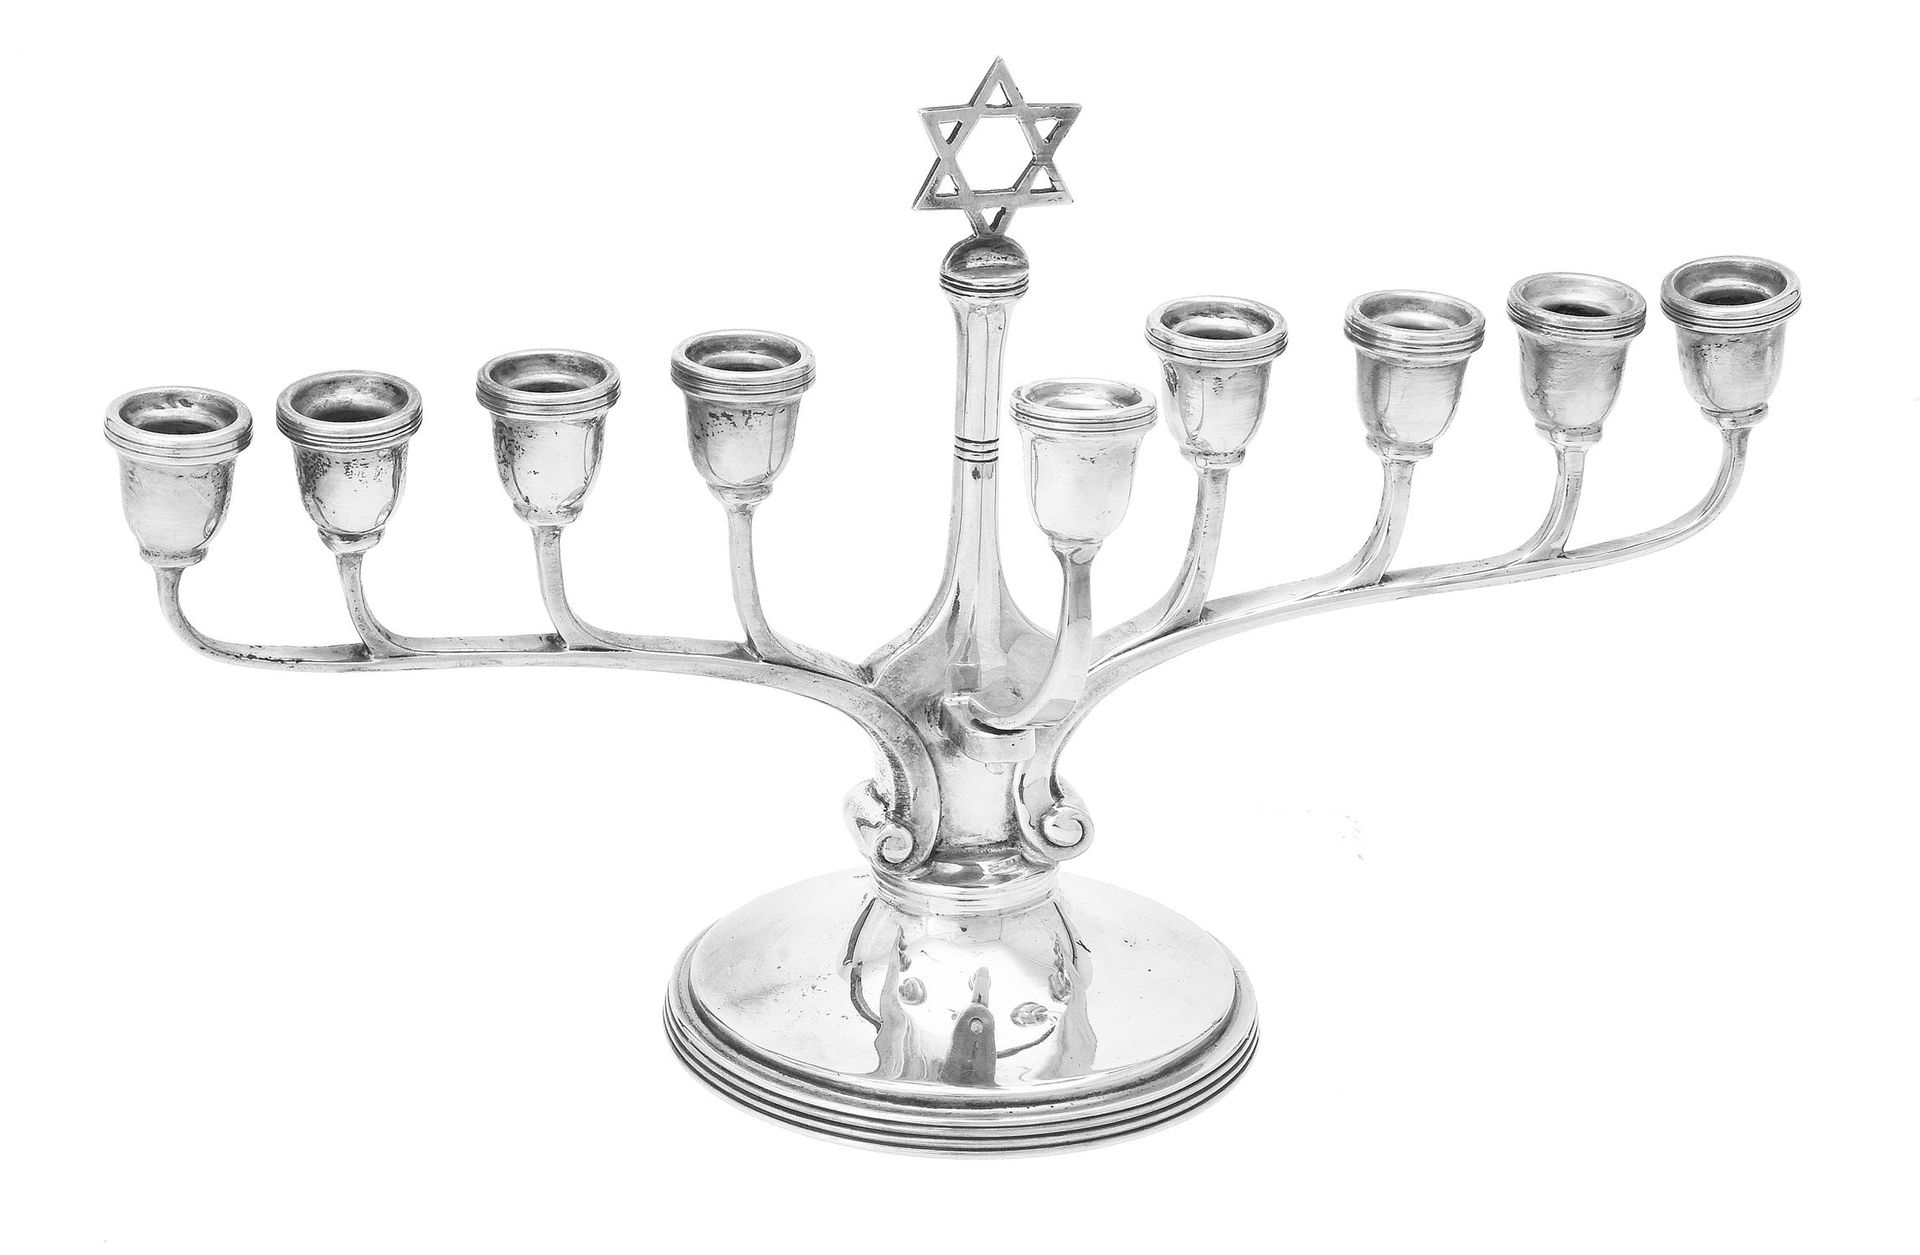 A silver nine branch Menorah by Adie Bros. Ltd. Menorah de plata de nueve ramas,&hellip;